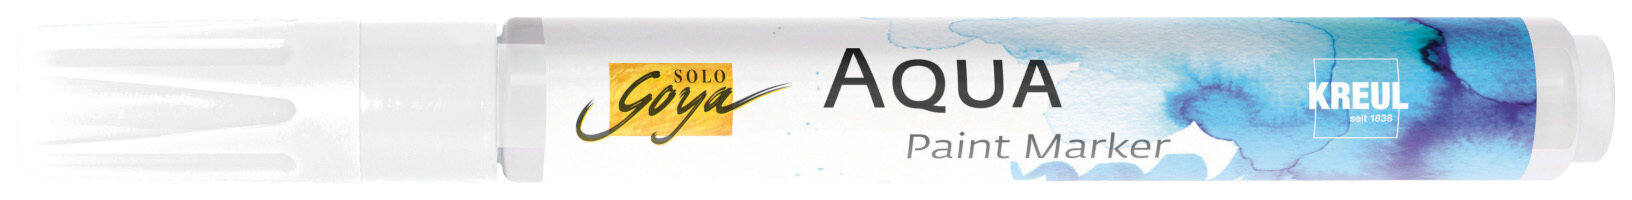 Marcador Kreul Aqua Aqua Paint Marker Blender